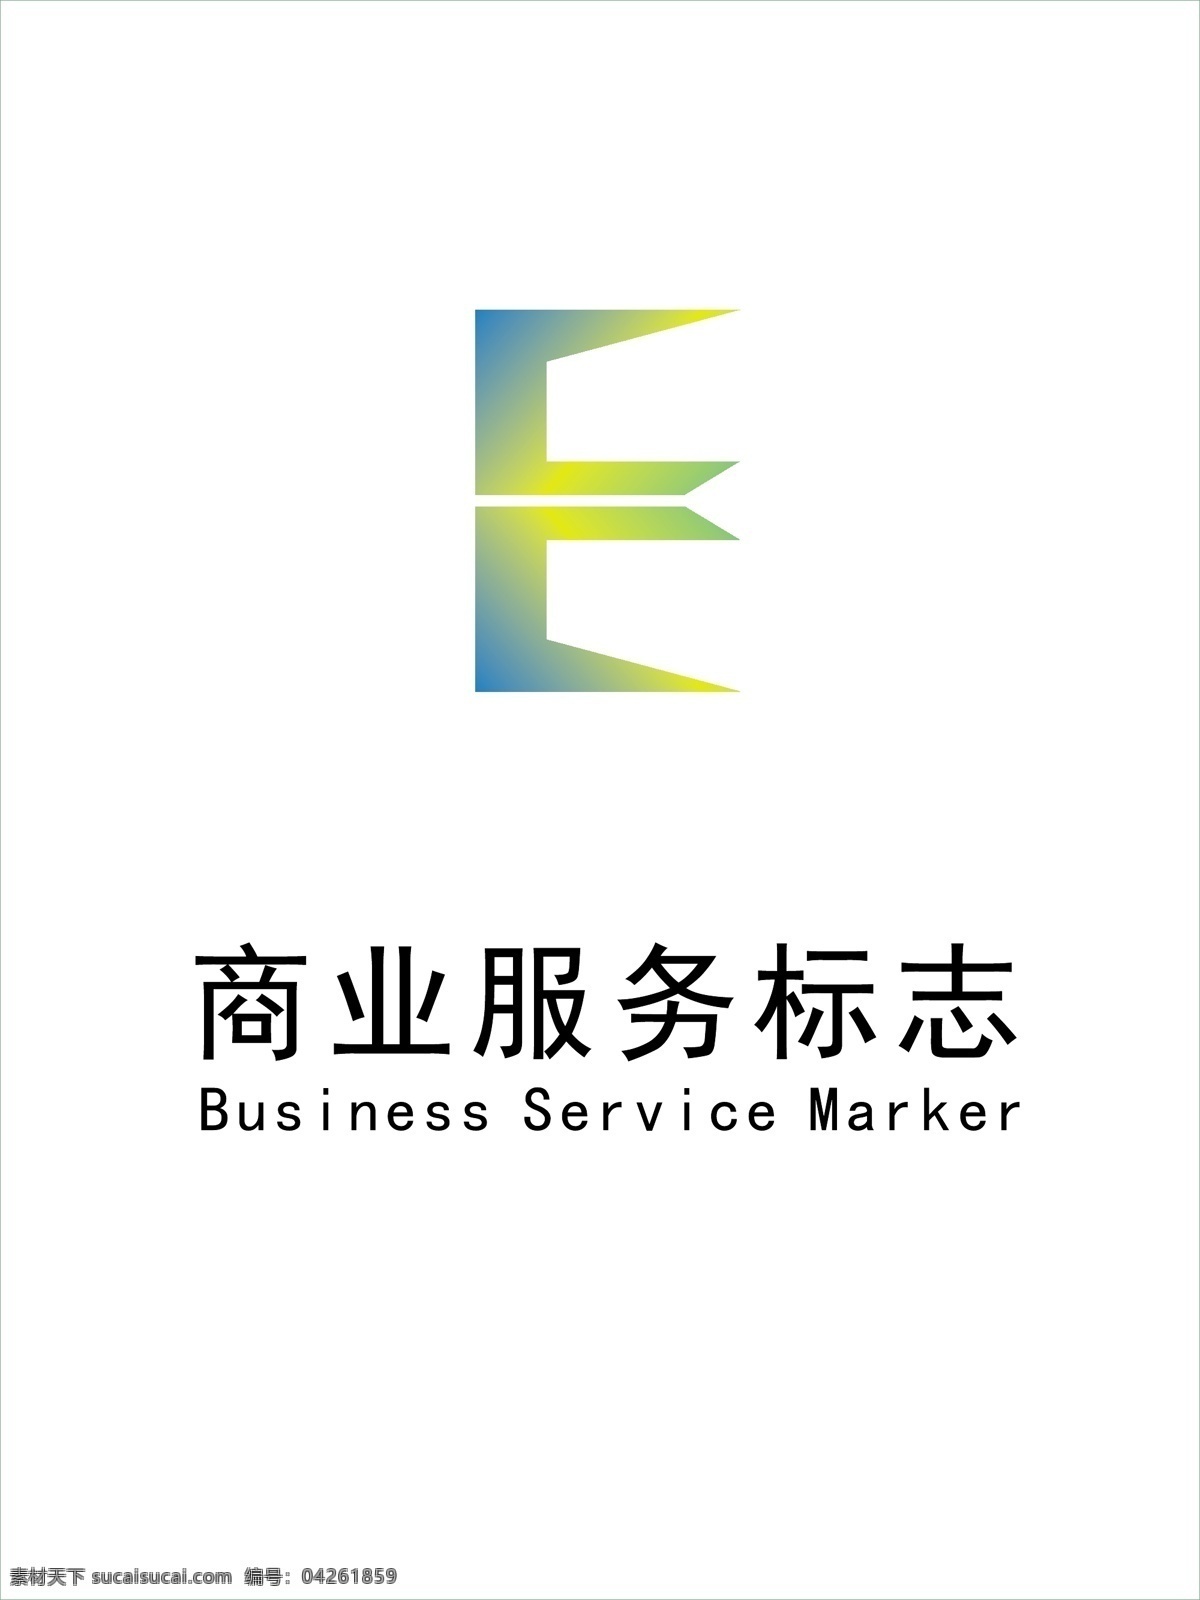 商业 logoe 字母 logo 商业logo e 地产logo 地产标志 e字母标志 商业服务标志 business service marker